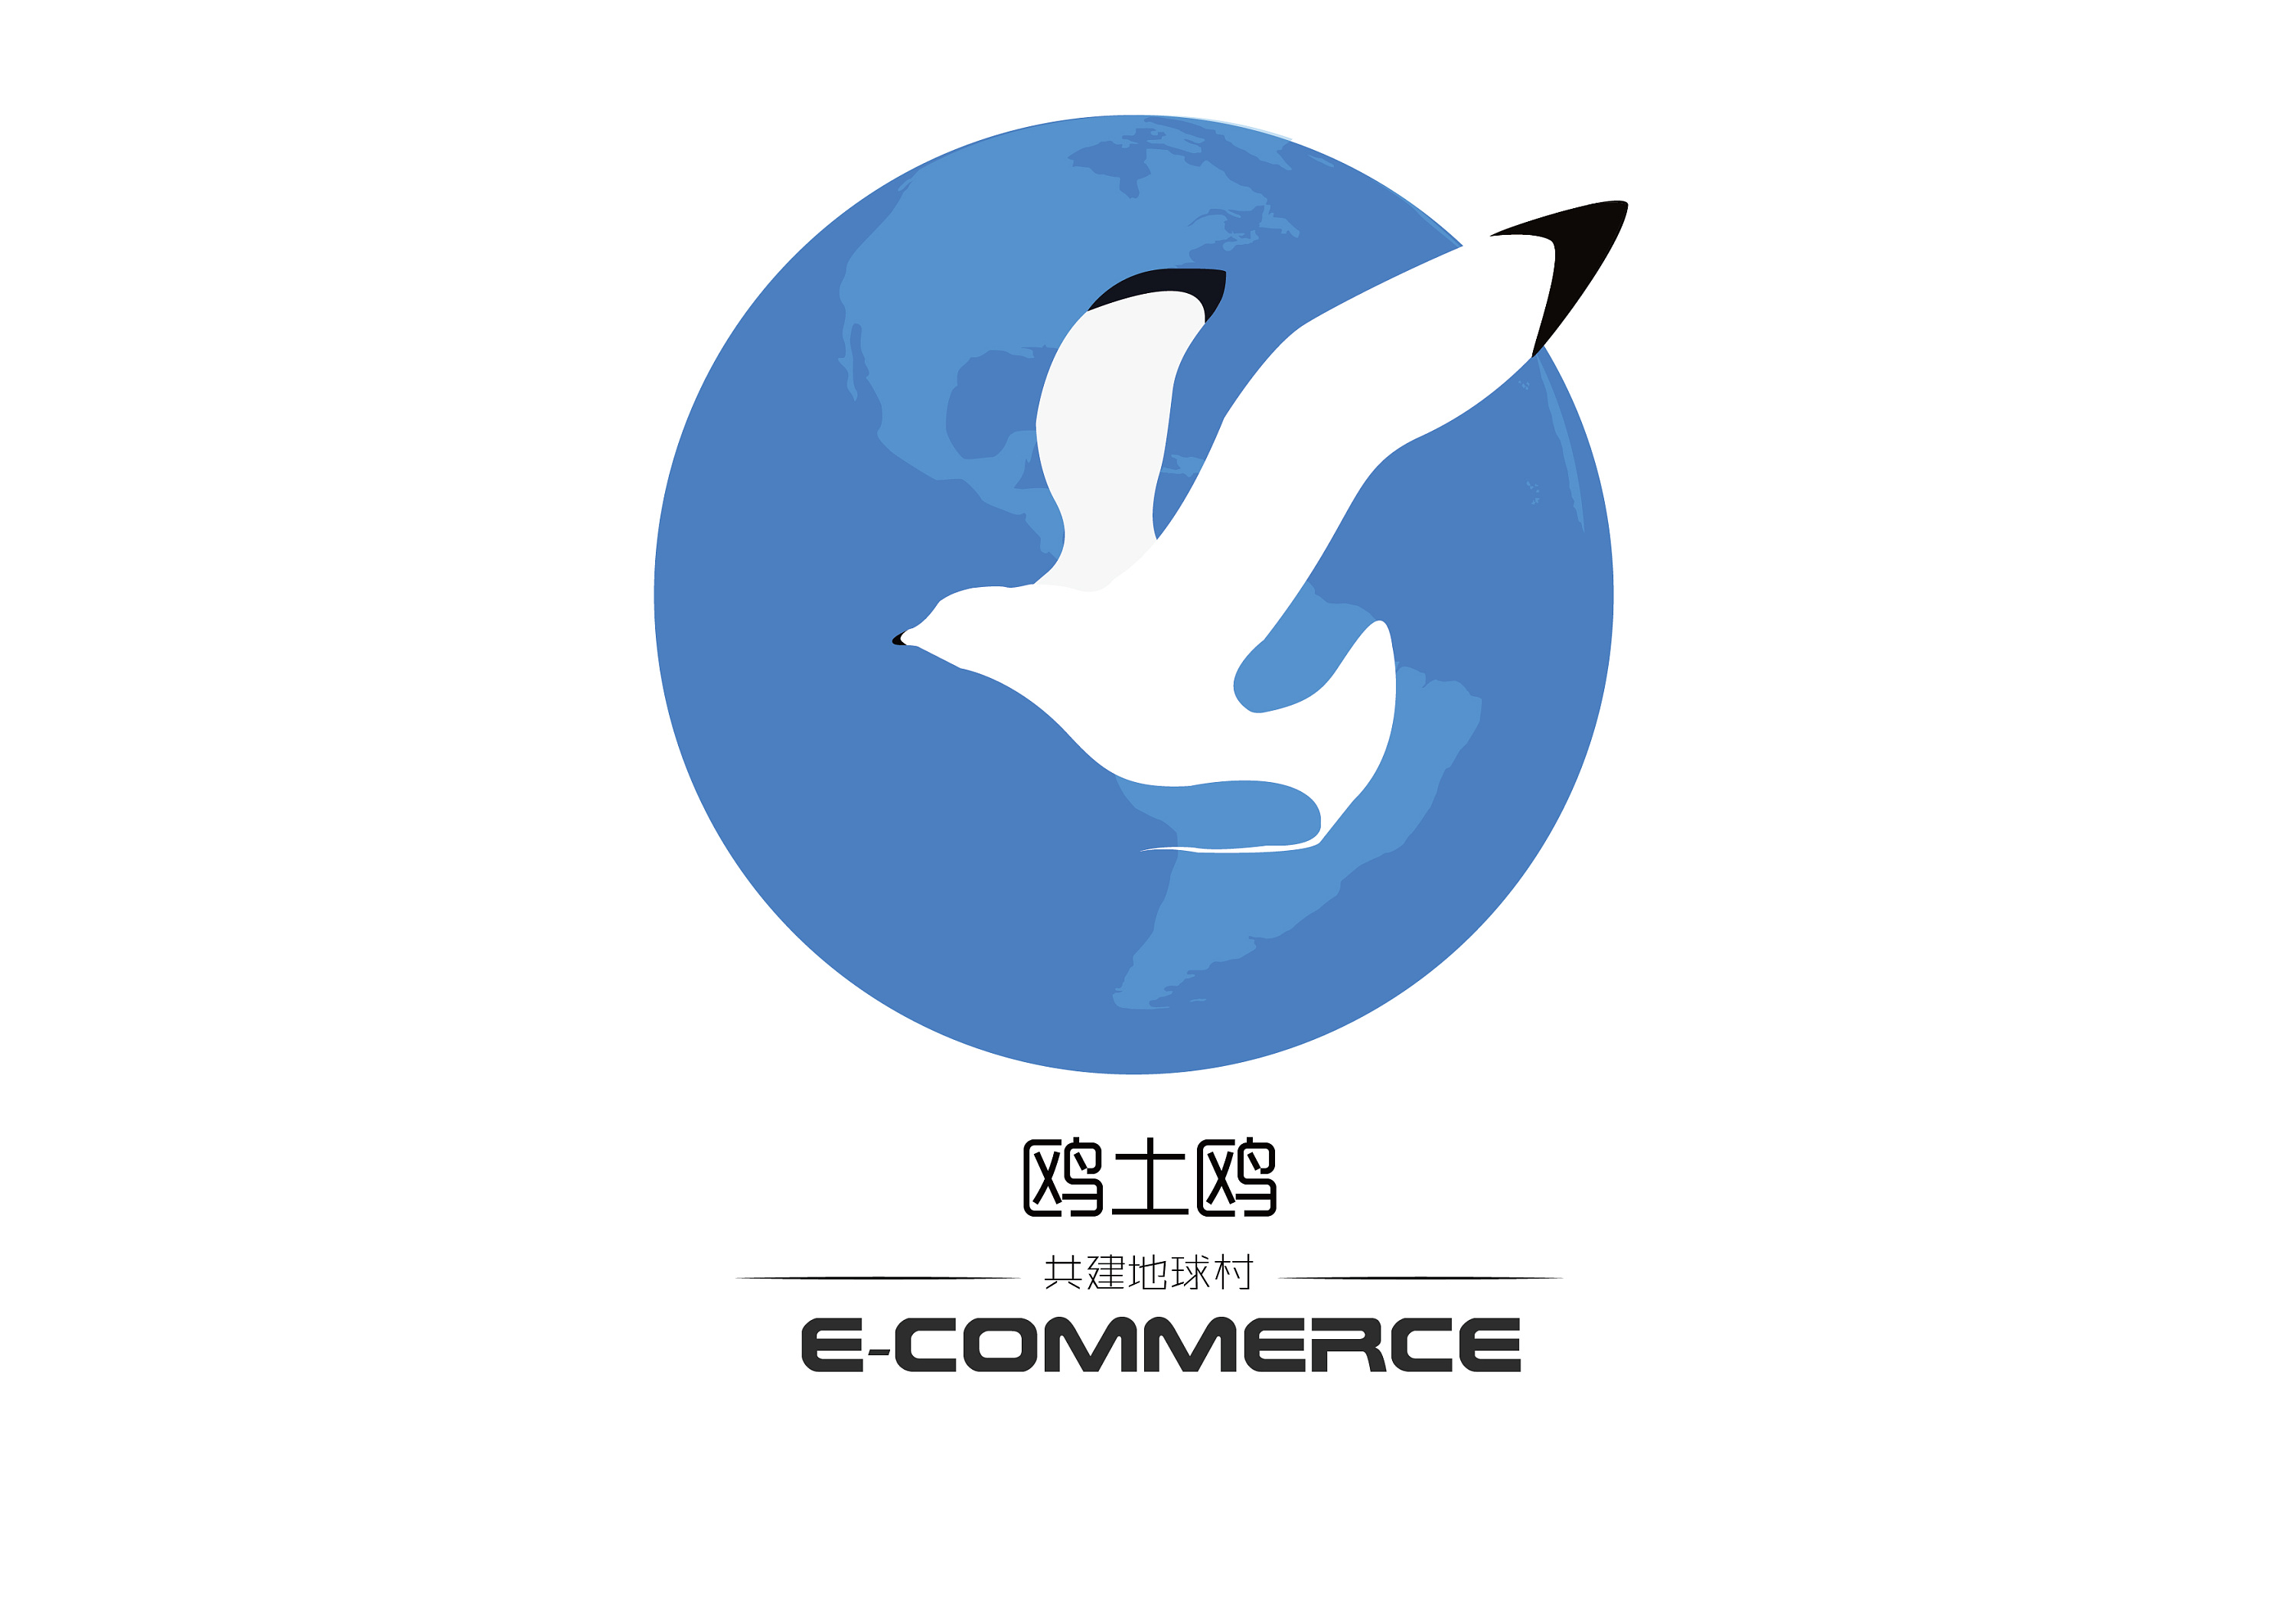 海鸥logo 图标图片